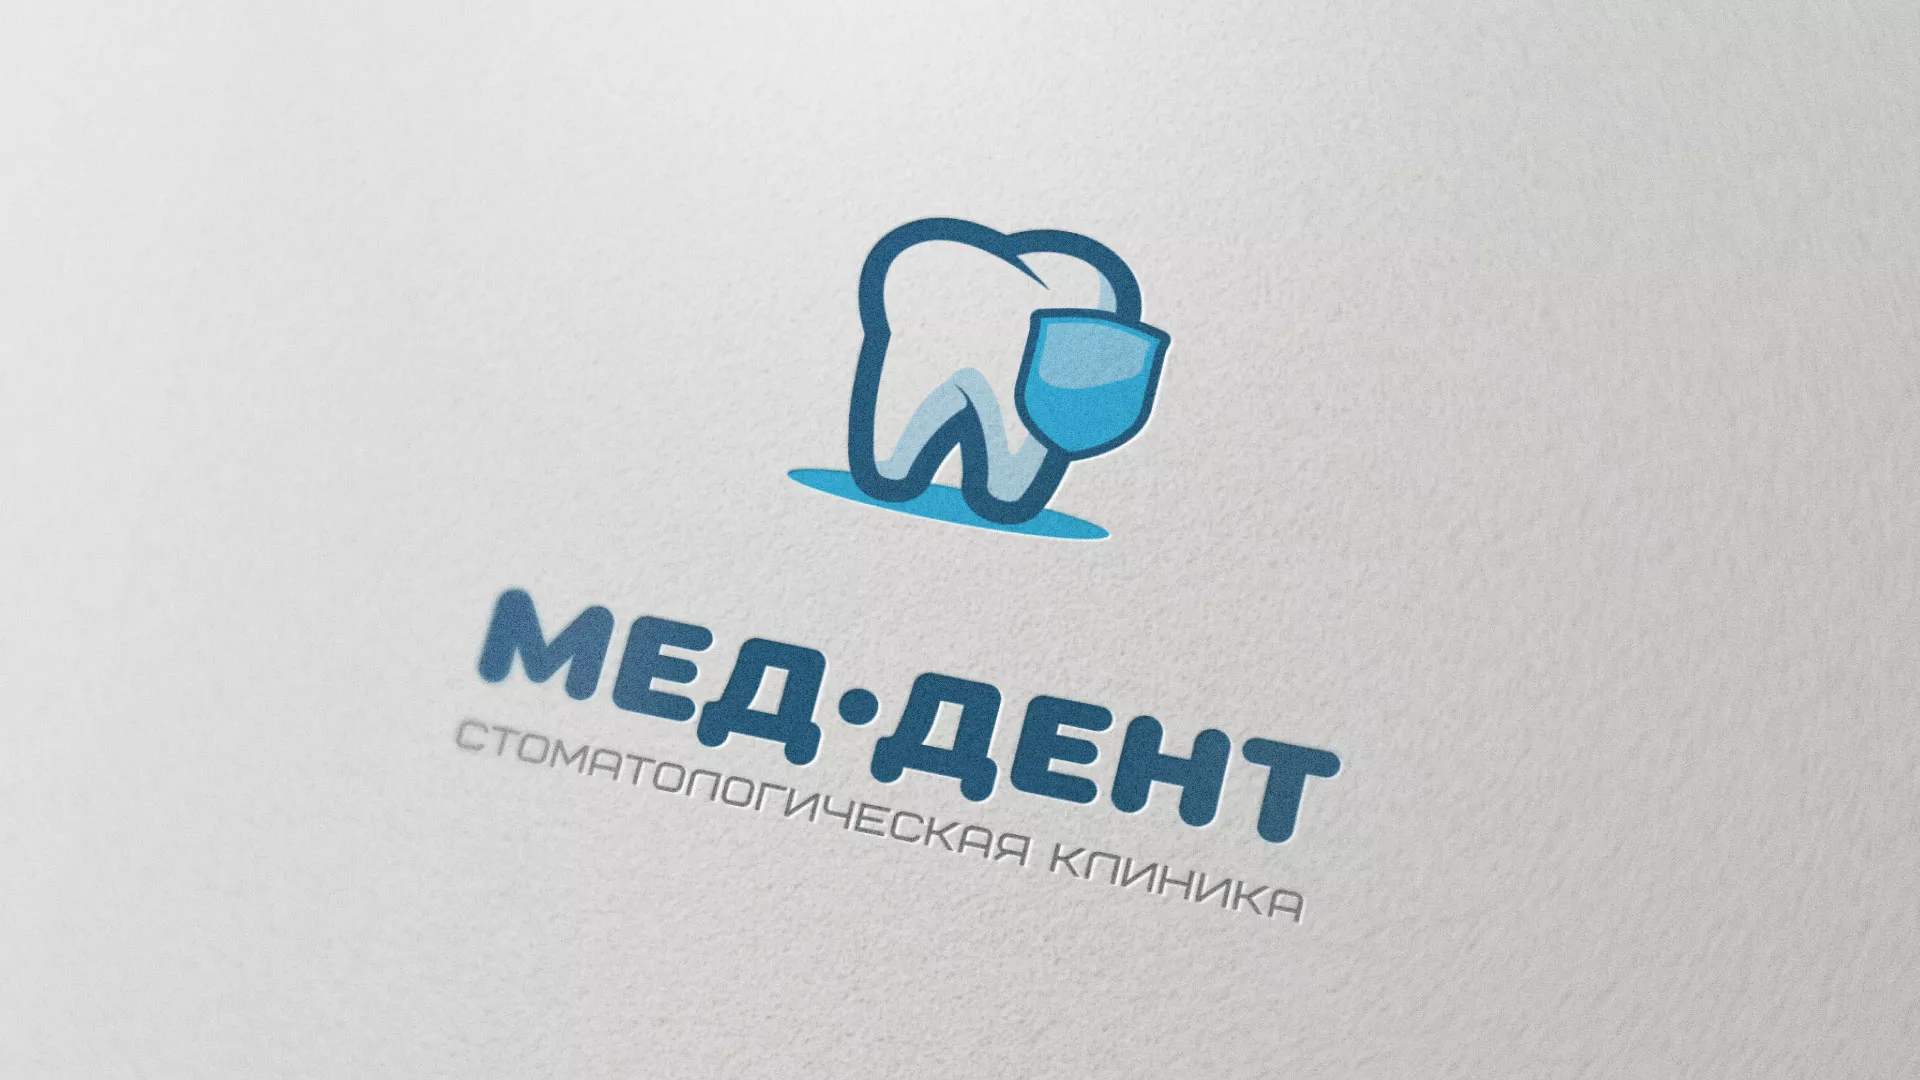 Разработка логотипа стоматологической клиники «МЕД-ДЕНТ» в Петропавловске-Камчатском